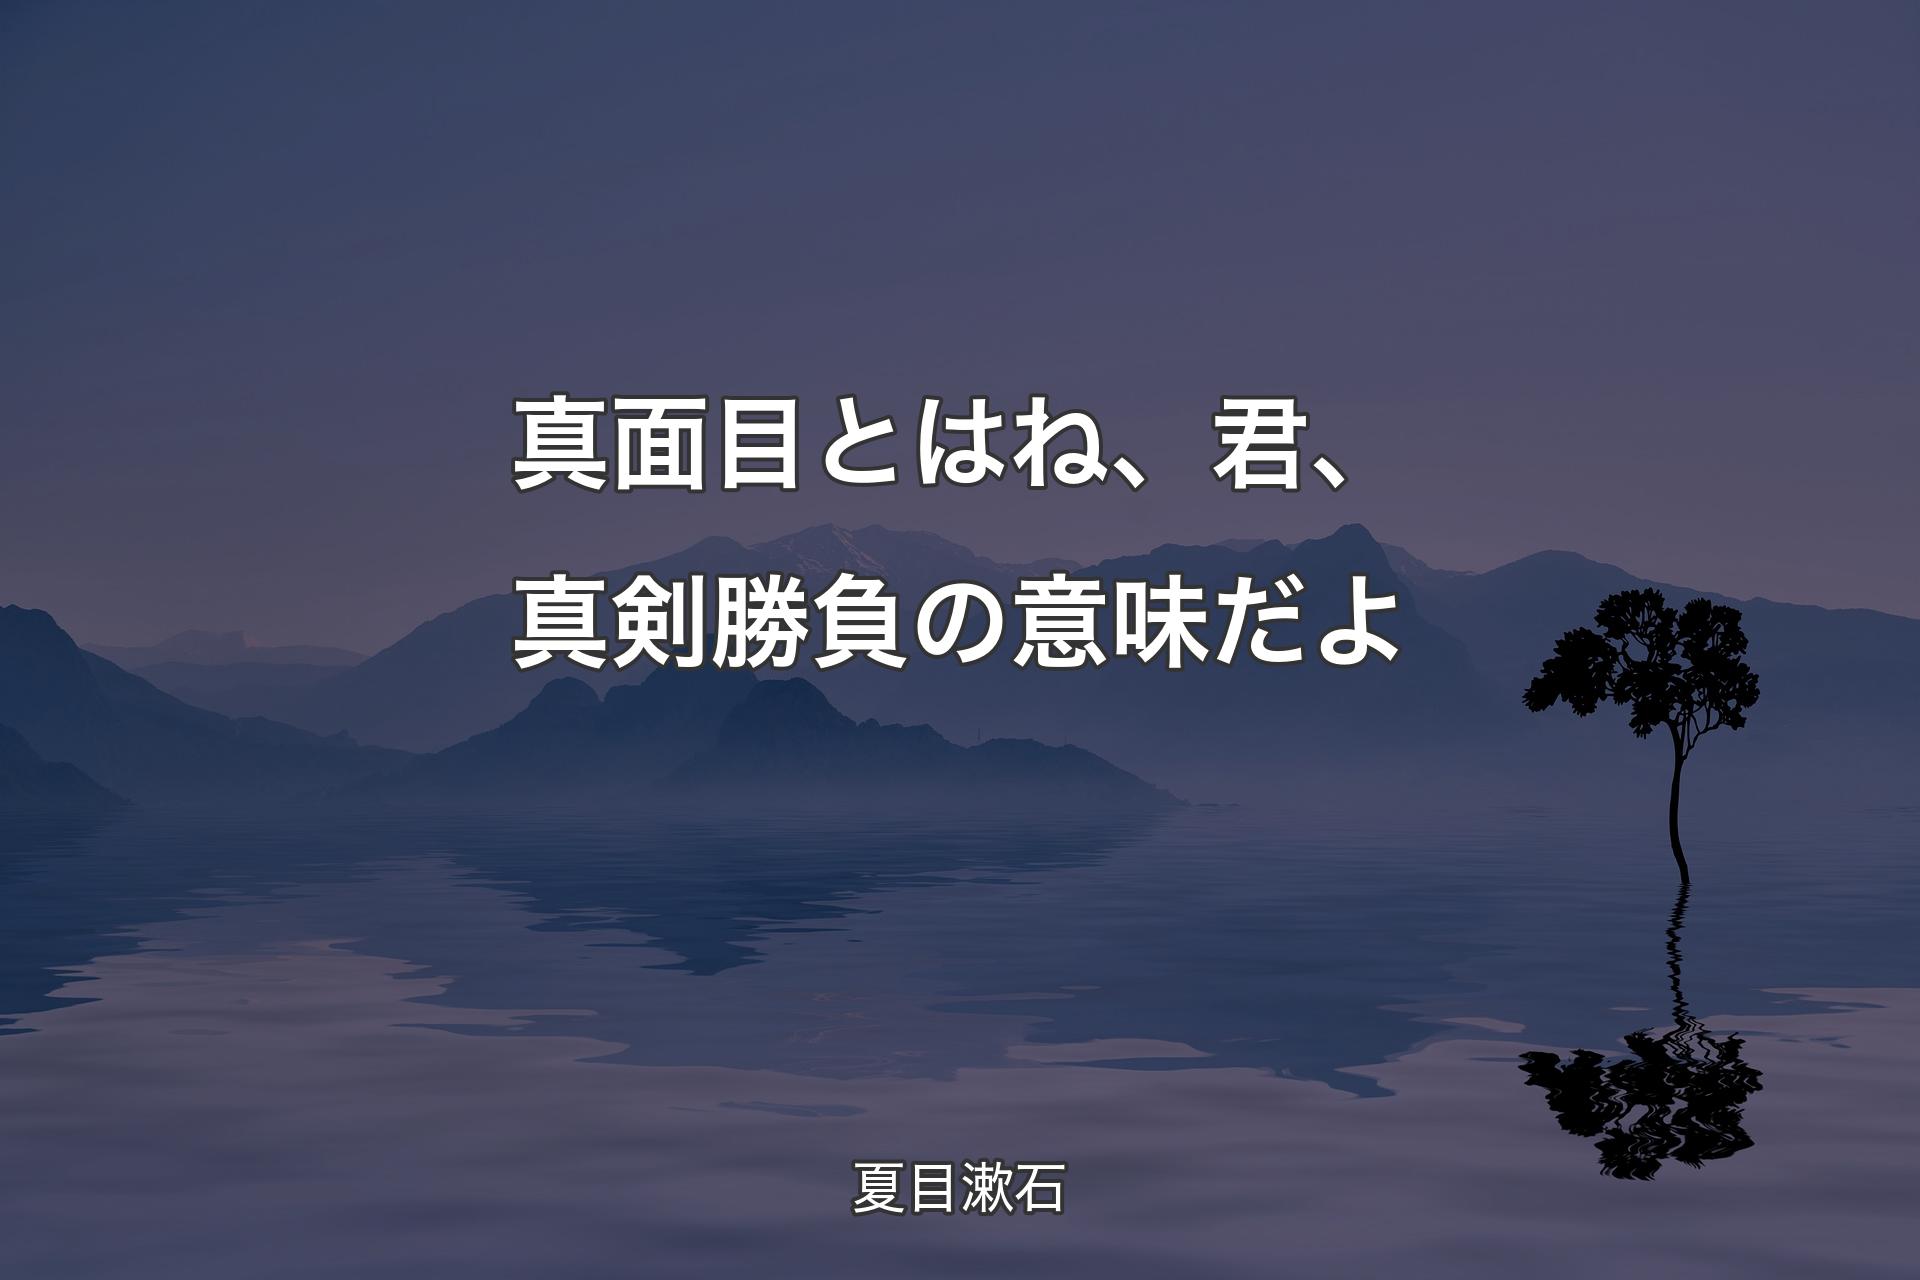 【背景4】真面目とはね、君、真剣勝負の意味だよ - 夏目漱石